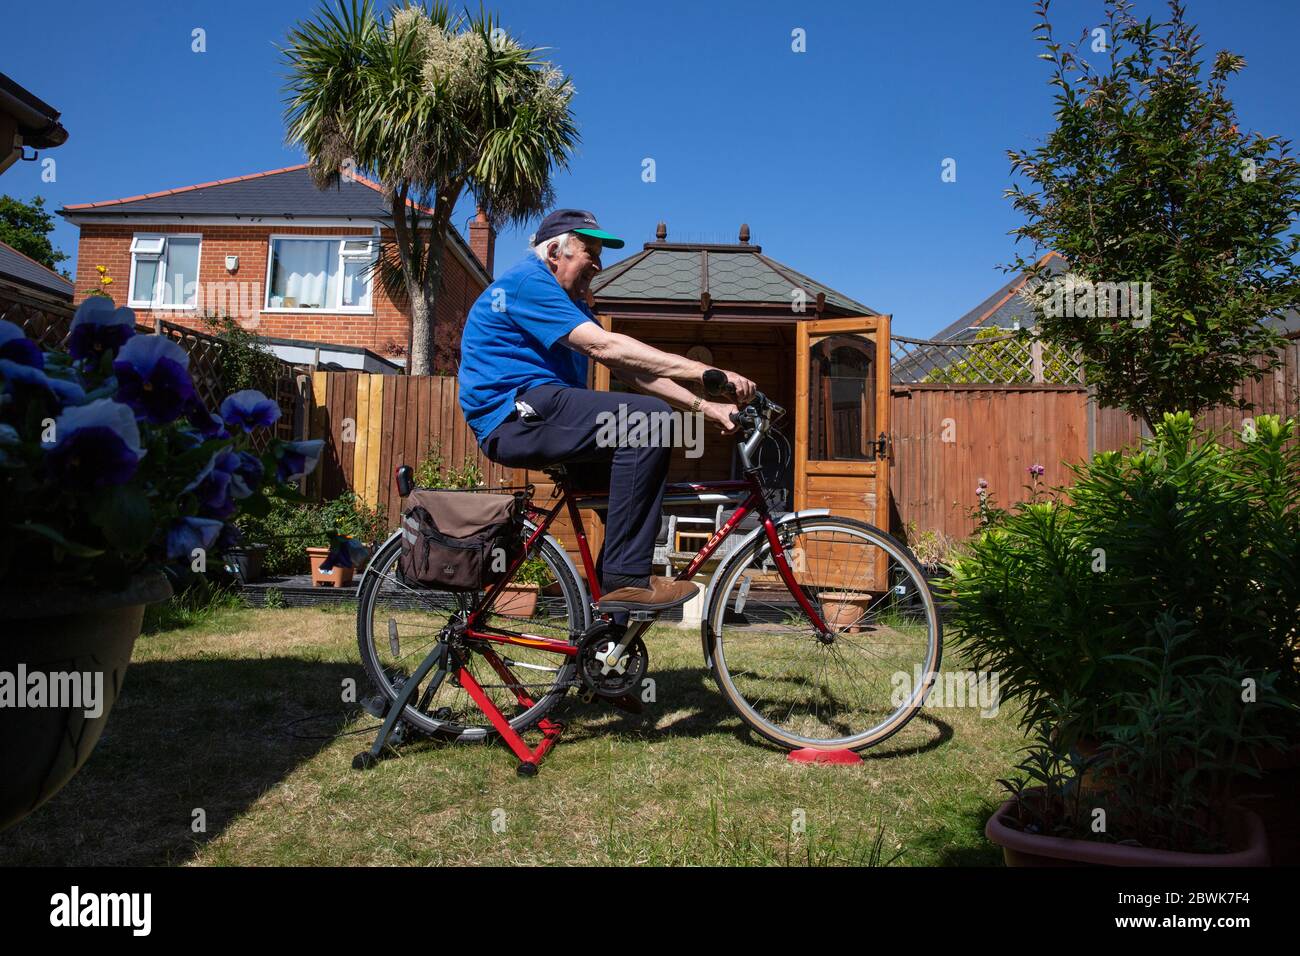 Les deux couples âgés dans leurs années 80 restant en forme sur un pied d'entraîneur de vélo dans leur jardin arrière pendant le verrouillage du coronavirus, sud-ouest de l'Angleterre, Royaume-Uni Banque D'Images